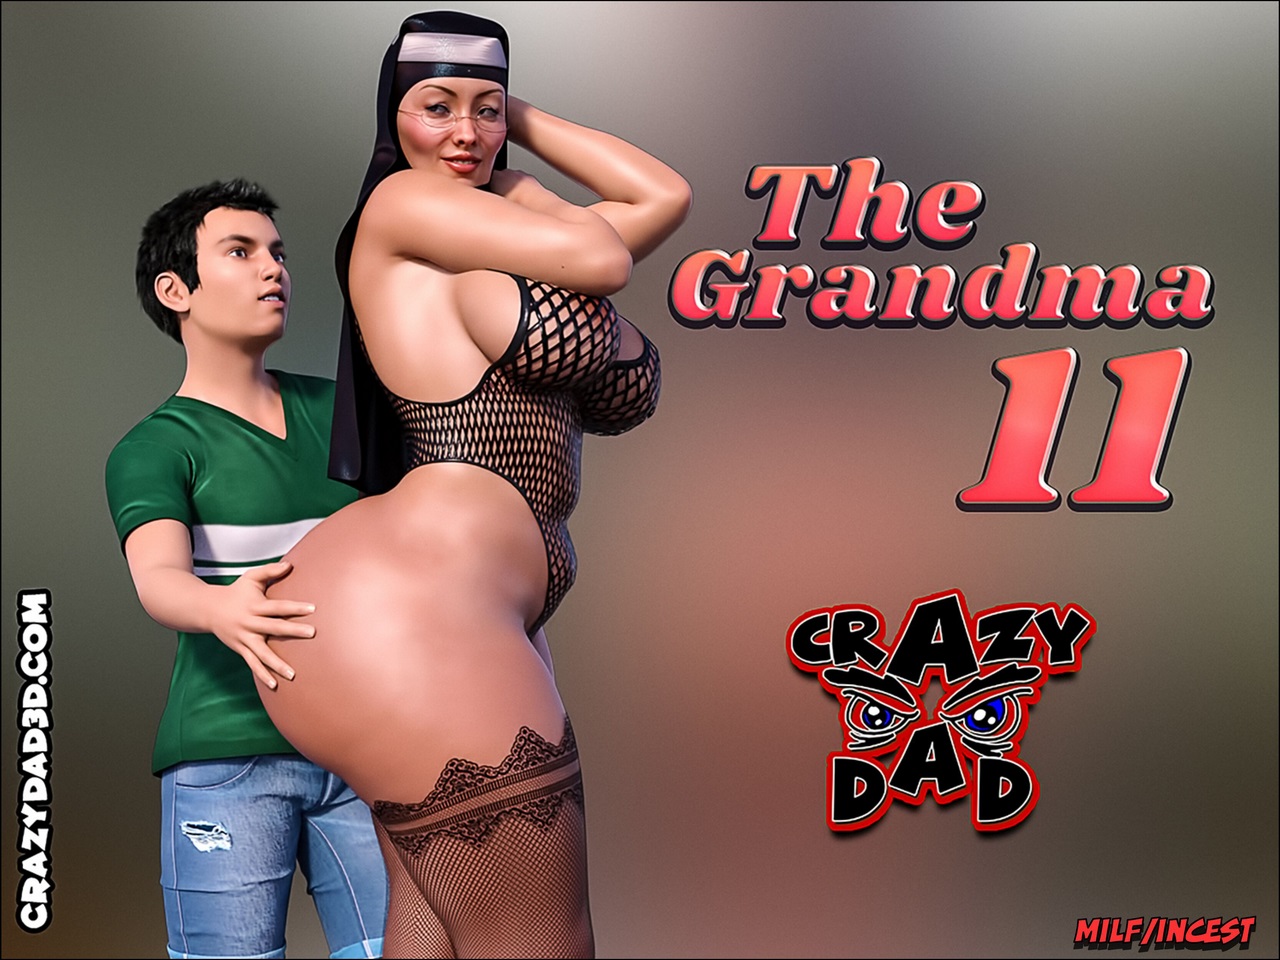 1280px x 960px - The Grandma Part 11- CrazyDad3D - Porn Cartoon Comics